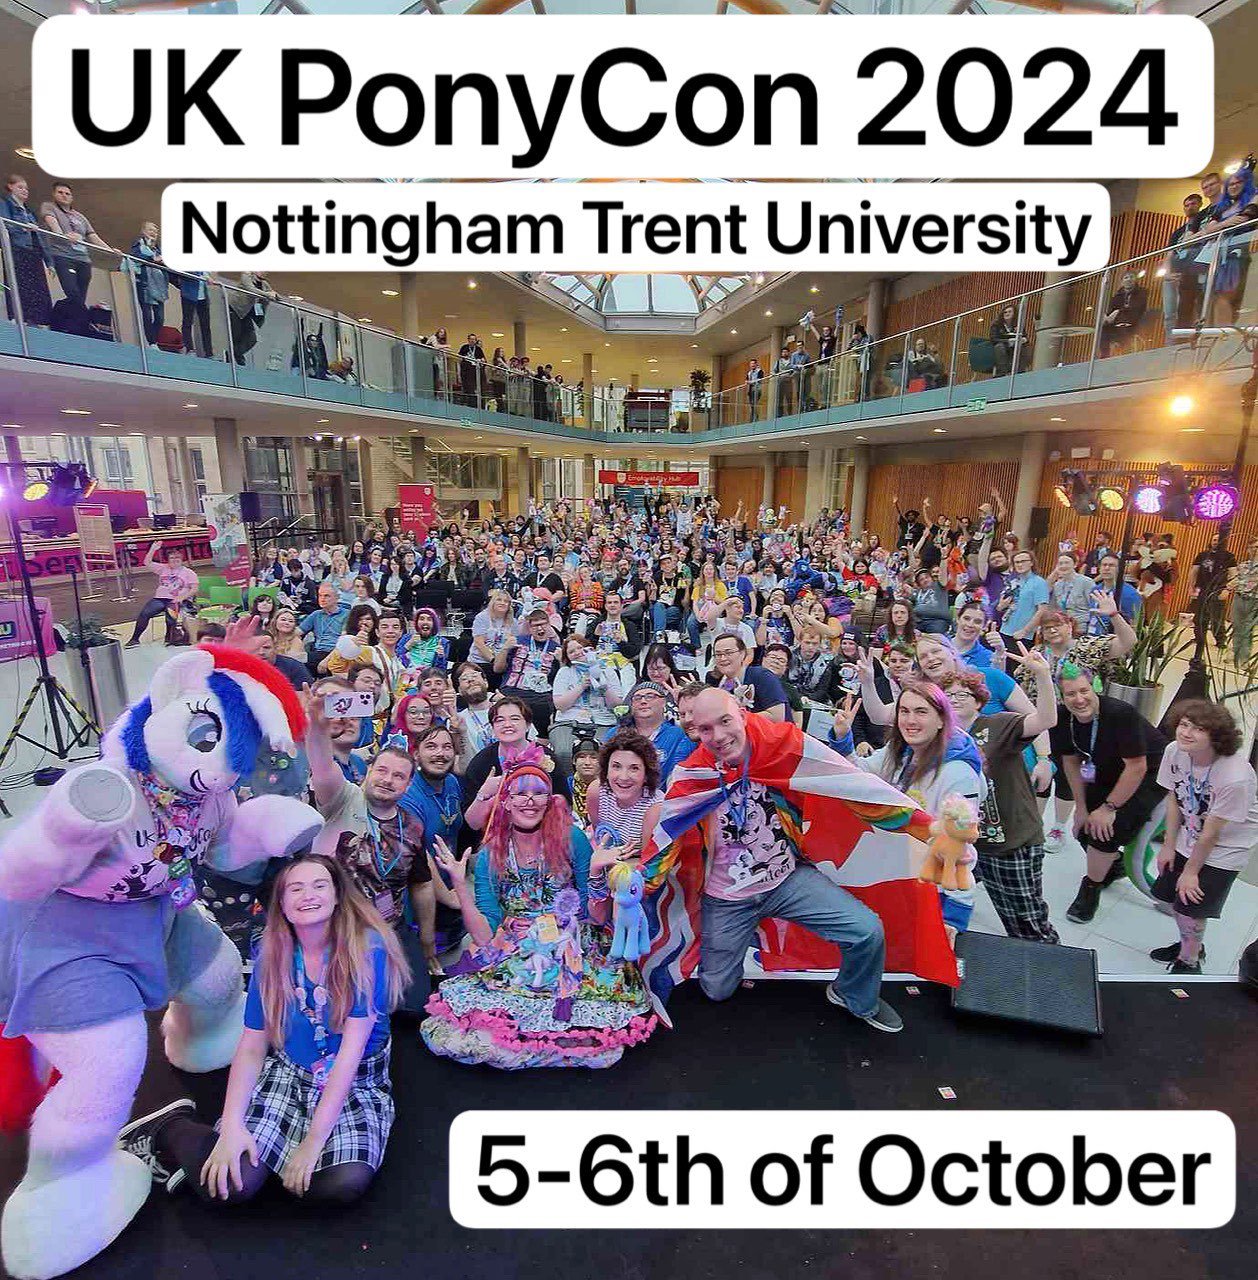 UK PonyCon 2024 DATES/LOCATION ANNOUNCEMENT! — UK PonyCon